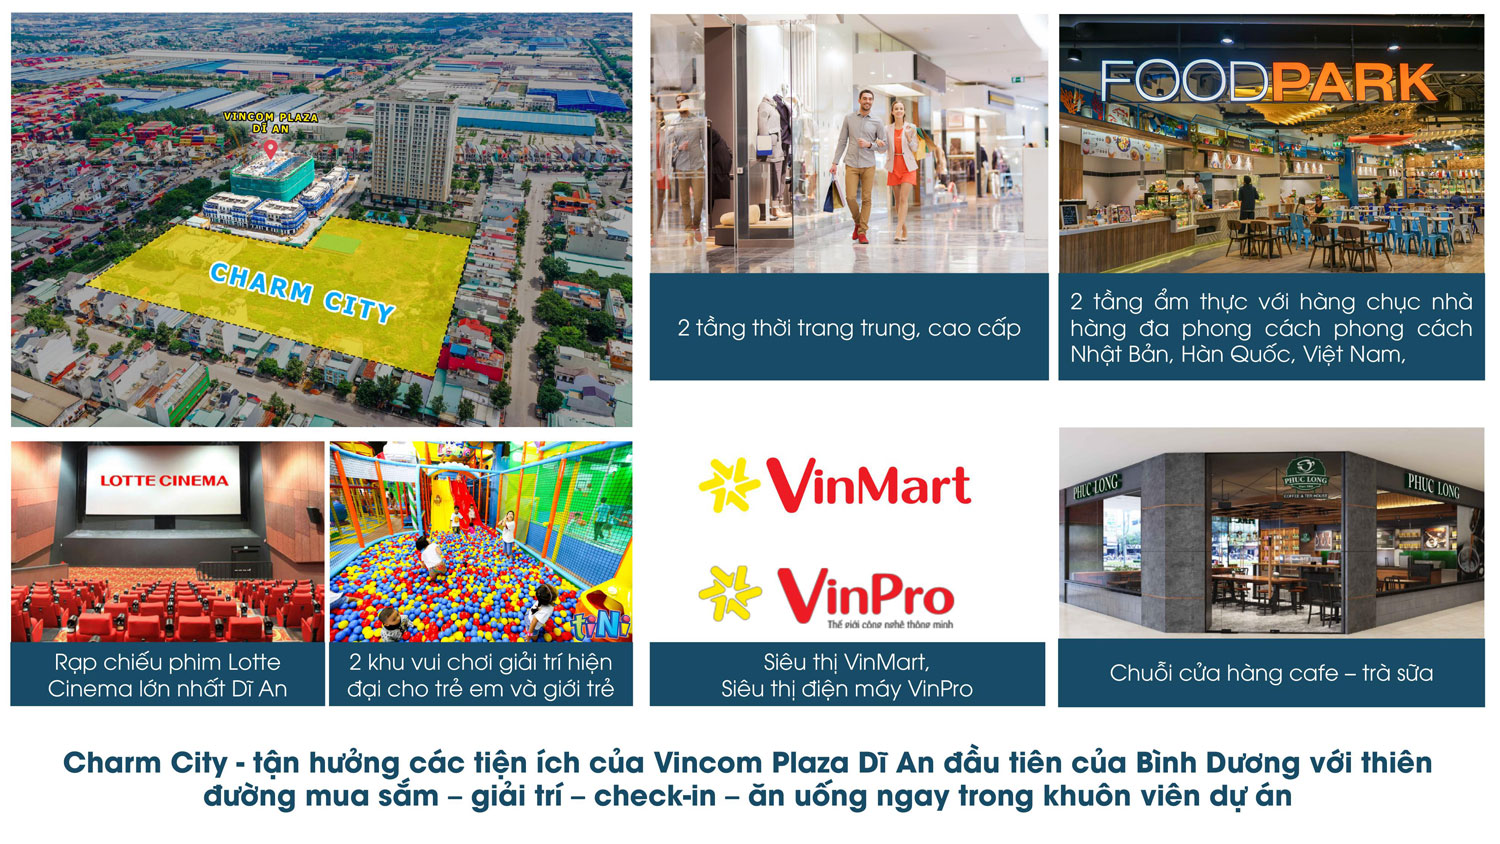 Charm City kết hợp các tiện ích của Vincom đầu tiên của Bình Dương với thiên đường mua sắm -  giải trí - check in - ăn uống ngay trong khuôn viên dự án